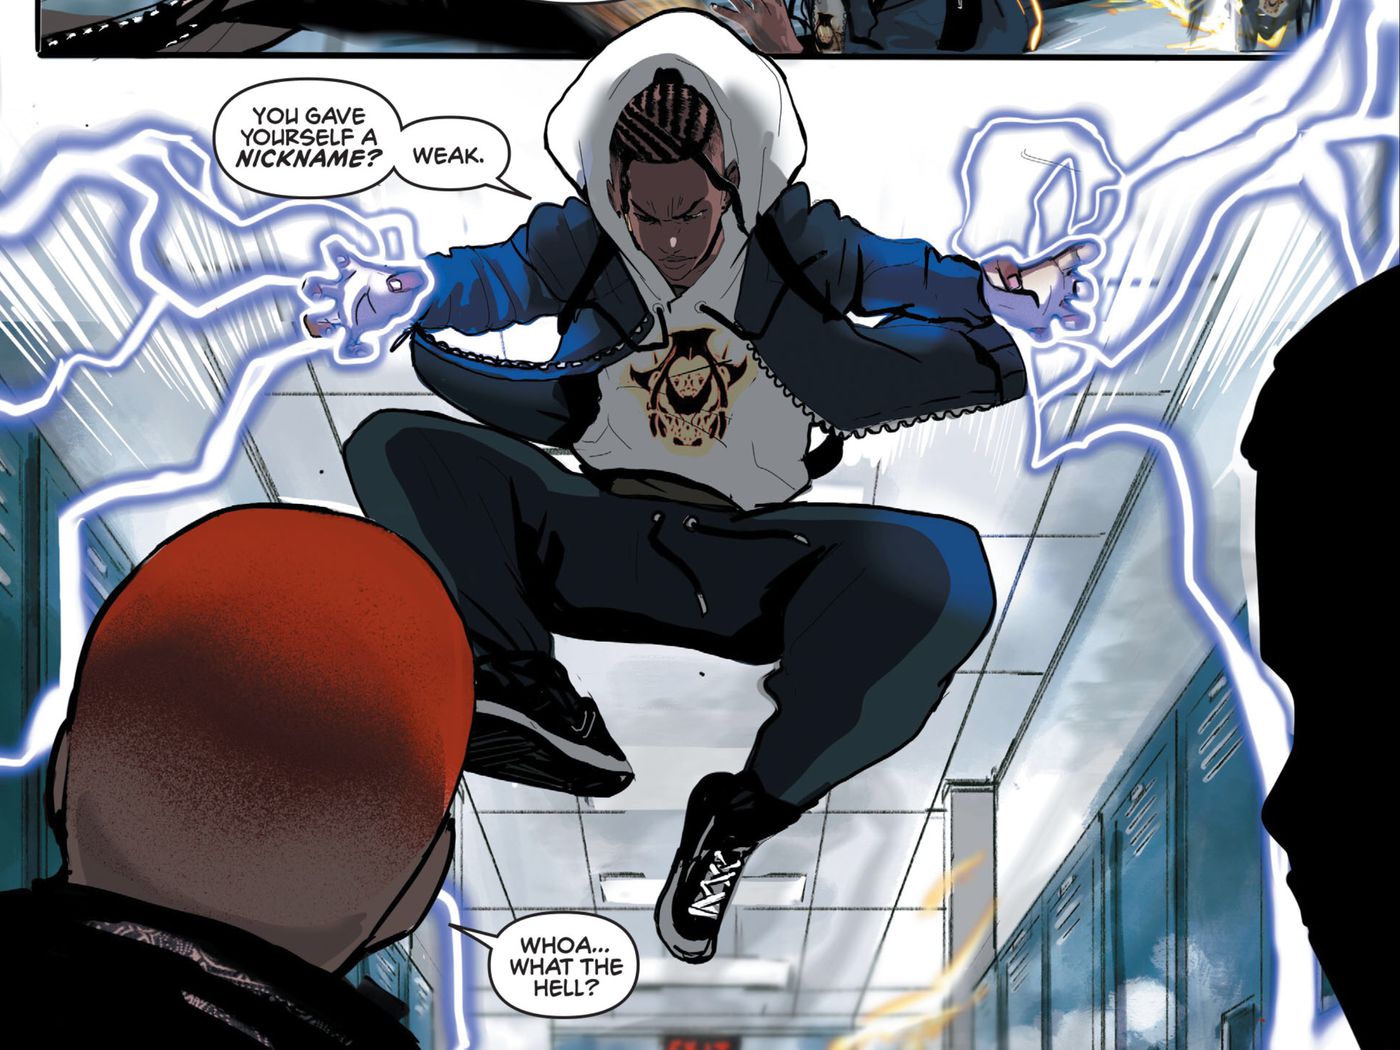 Static's new DC Comics origin ties into Black Lives Matter